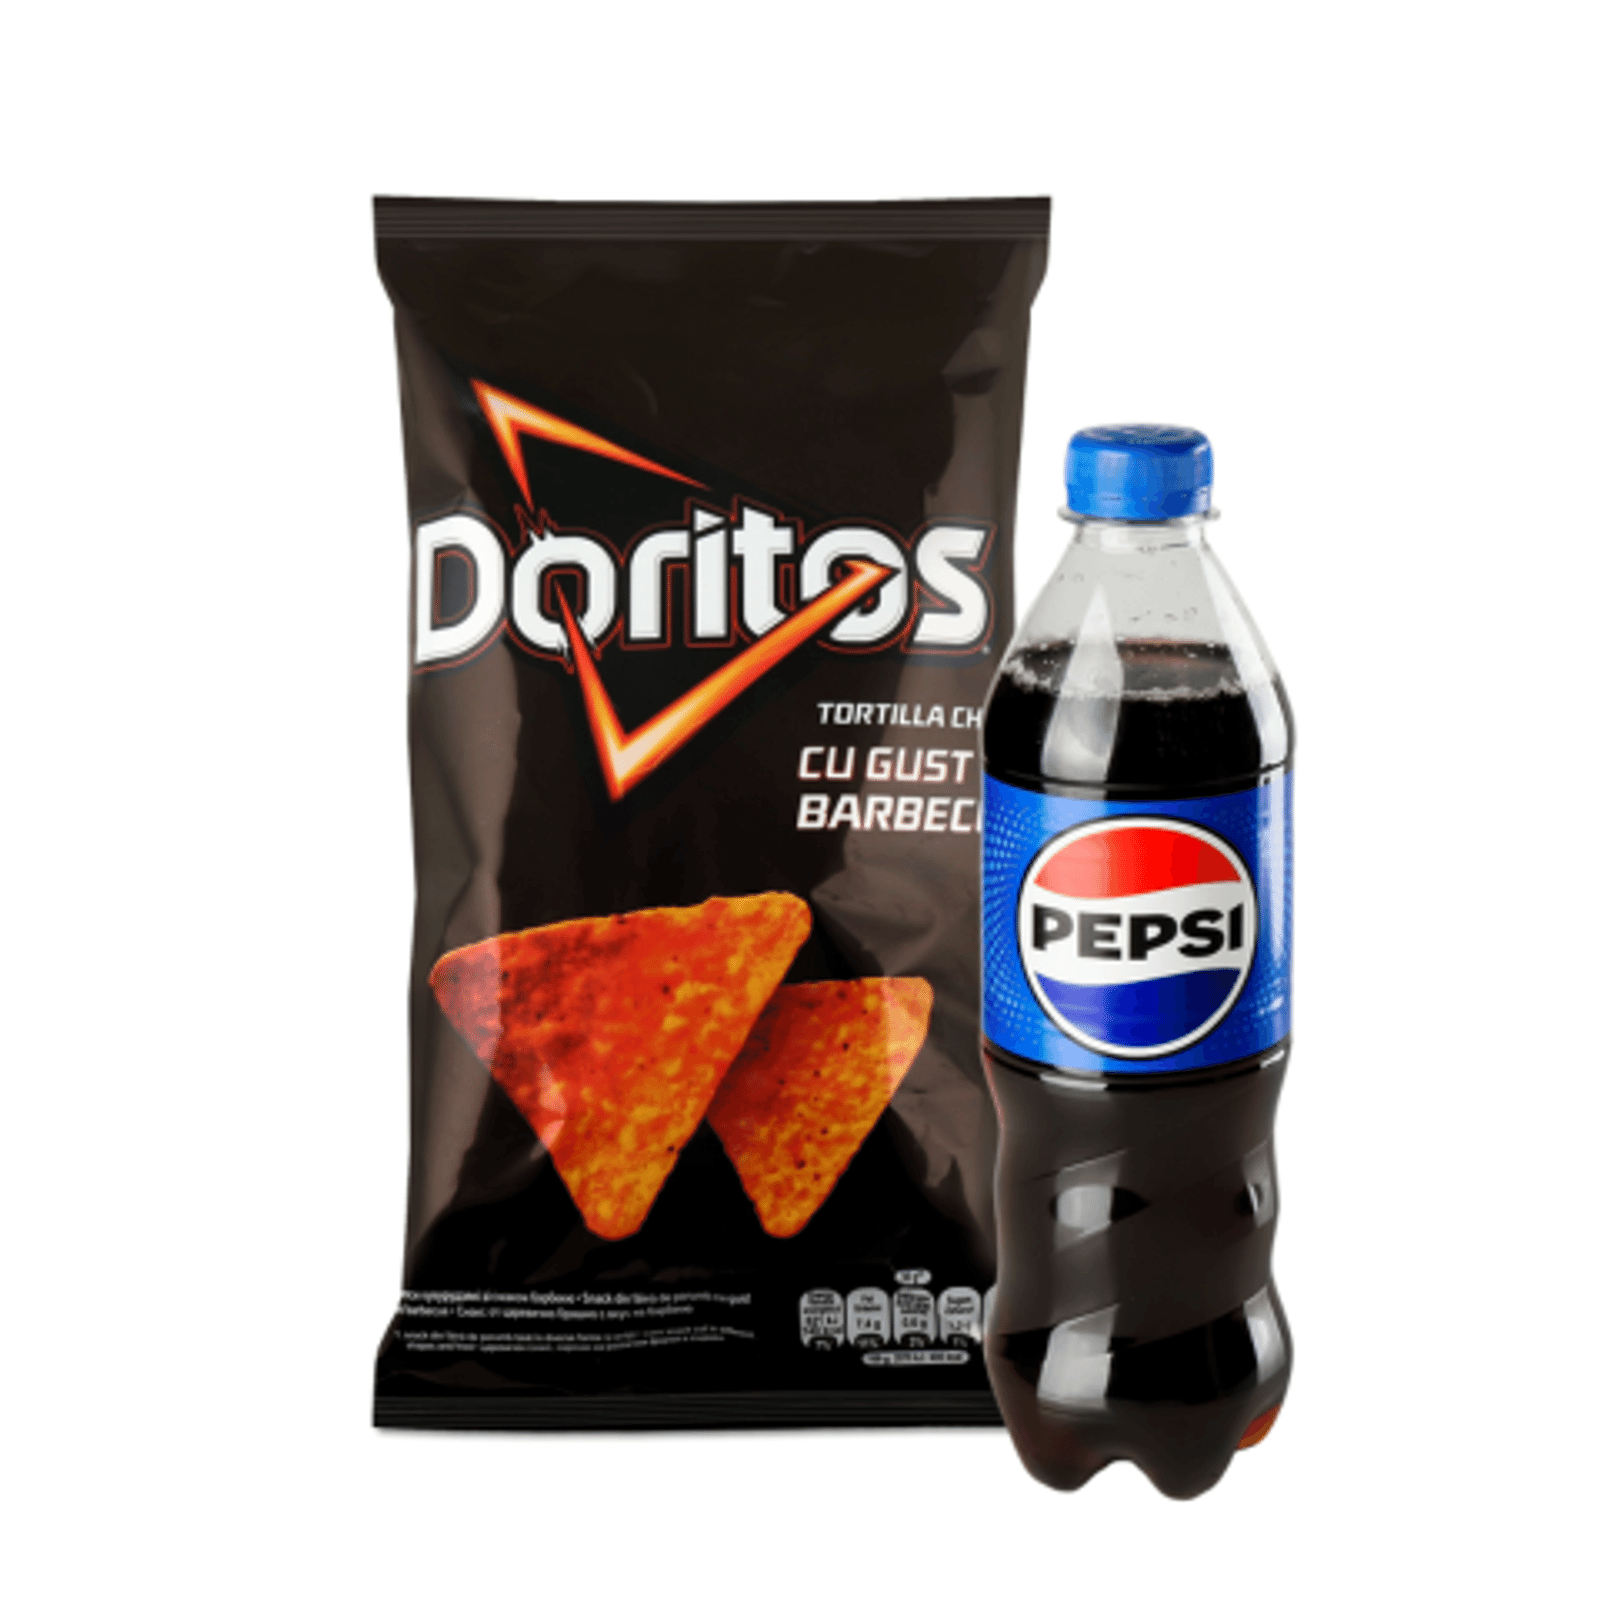 Сет " Doritos барбекю + Pepsi" - 1